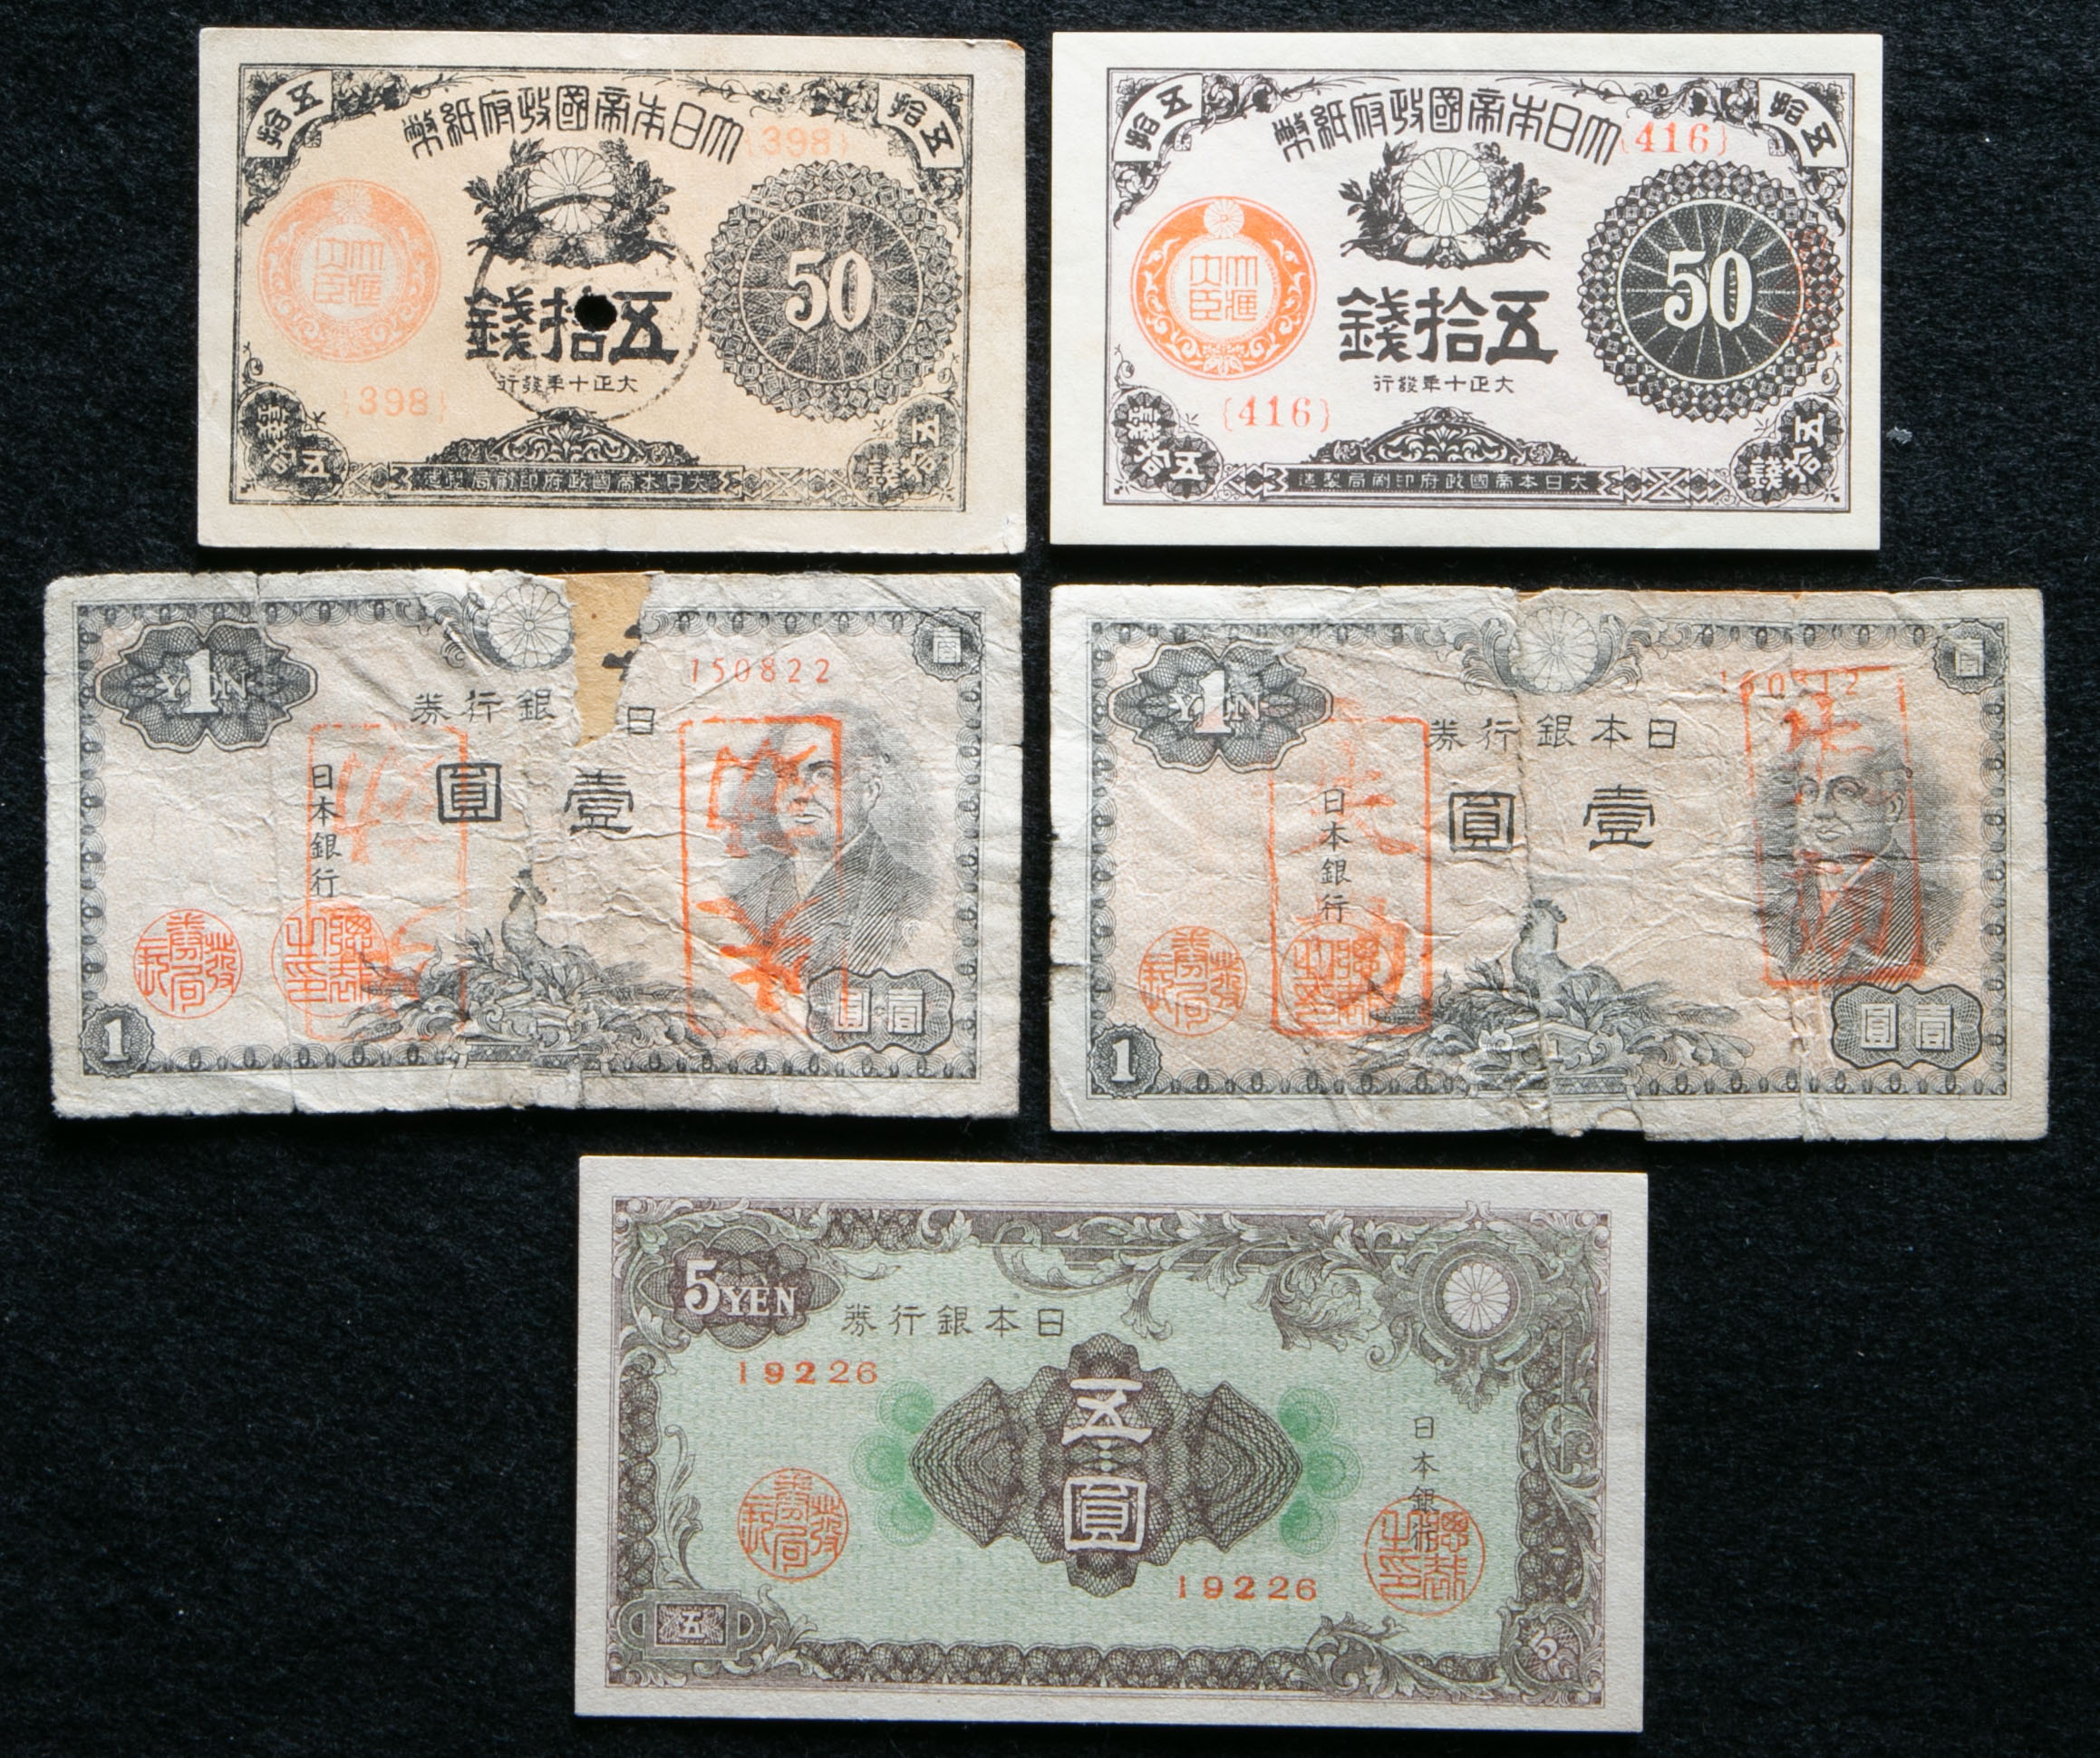 貨幣博物館 | 紙幣 Banknotes 大正小額紙幣50銭(x2),二宮1円(x2),紋様5 